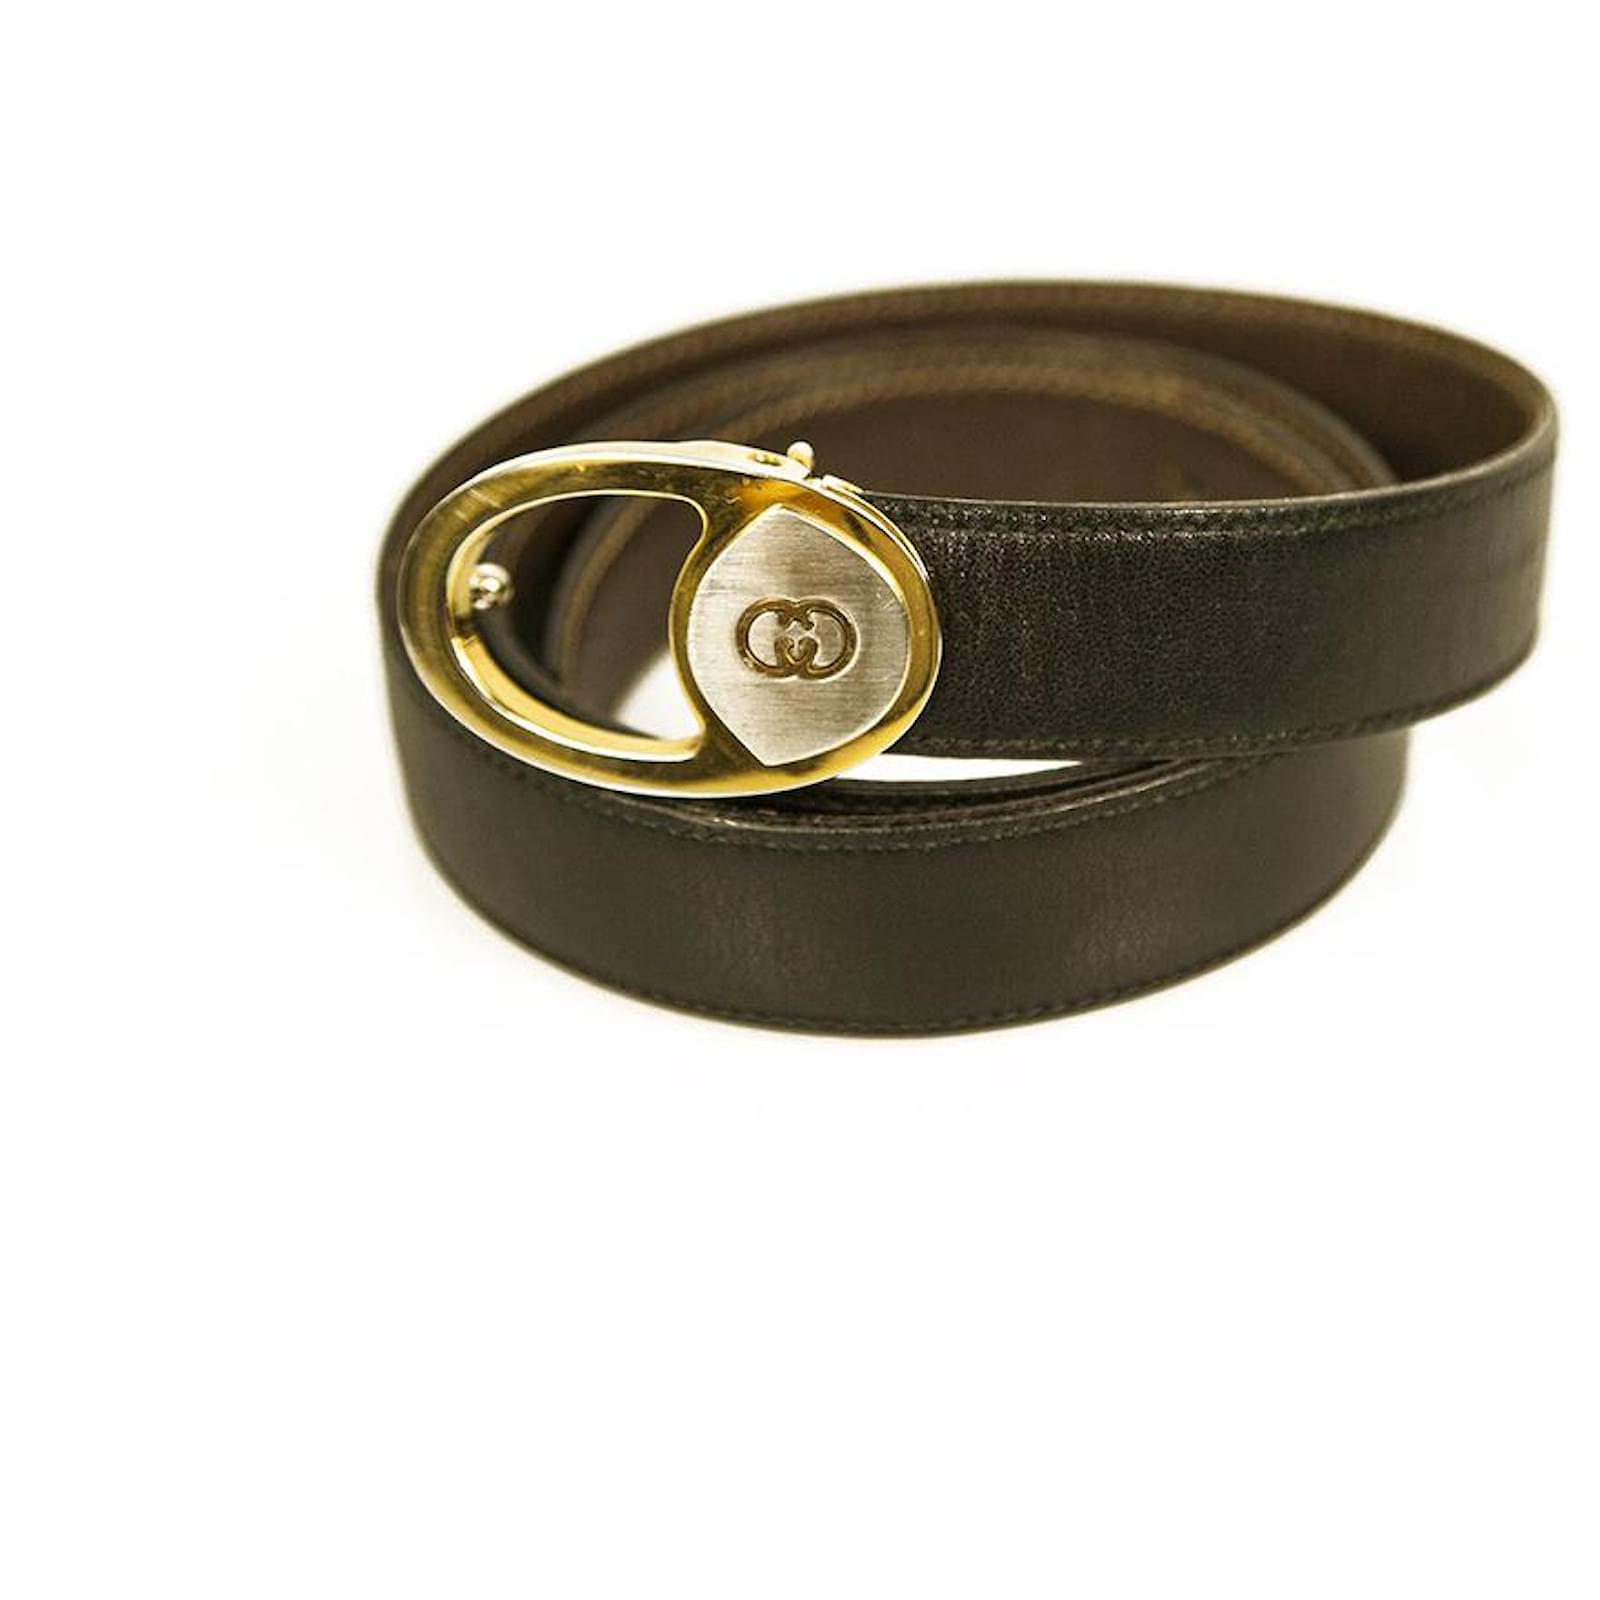 GUCCI Leather Monogram Interlocking G Belt Dark Brown Size 85/34